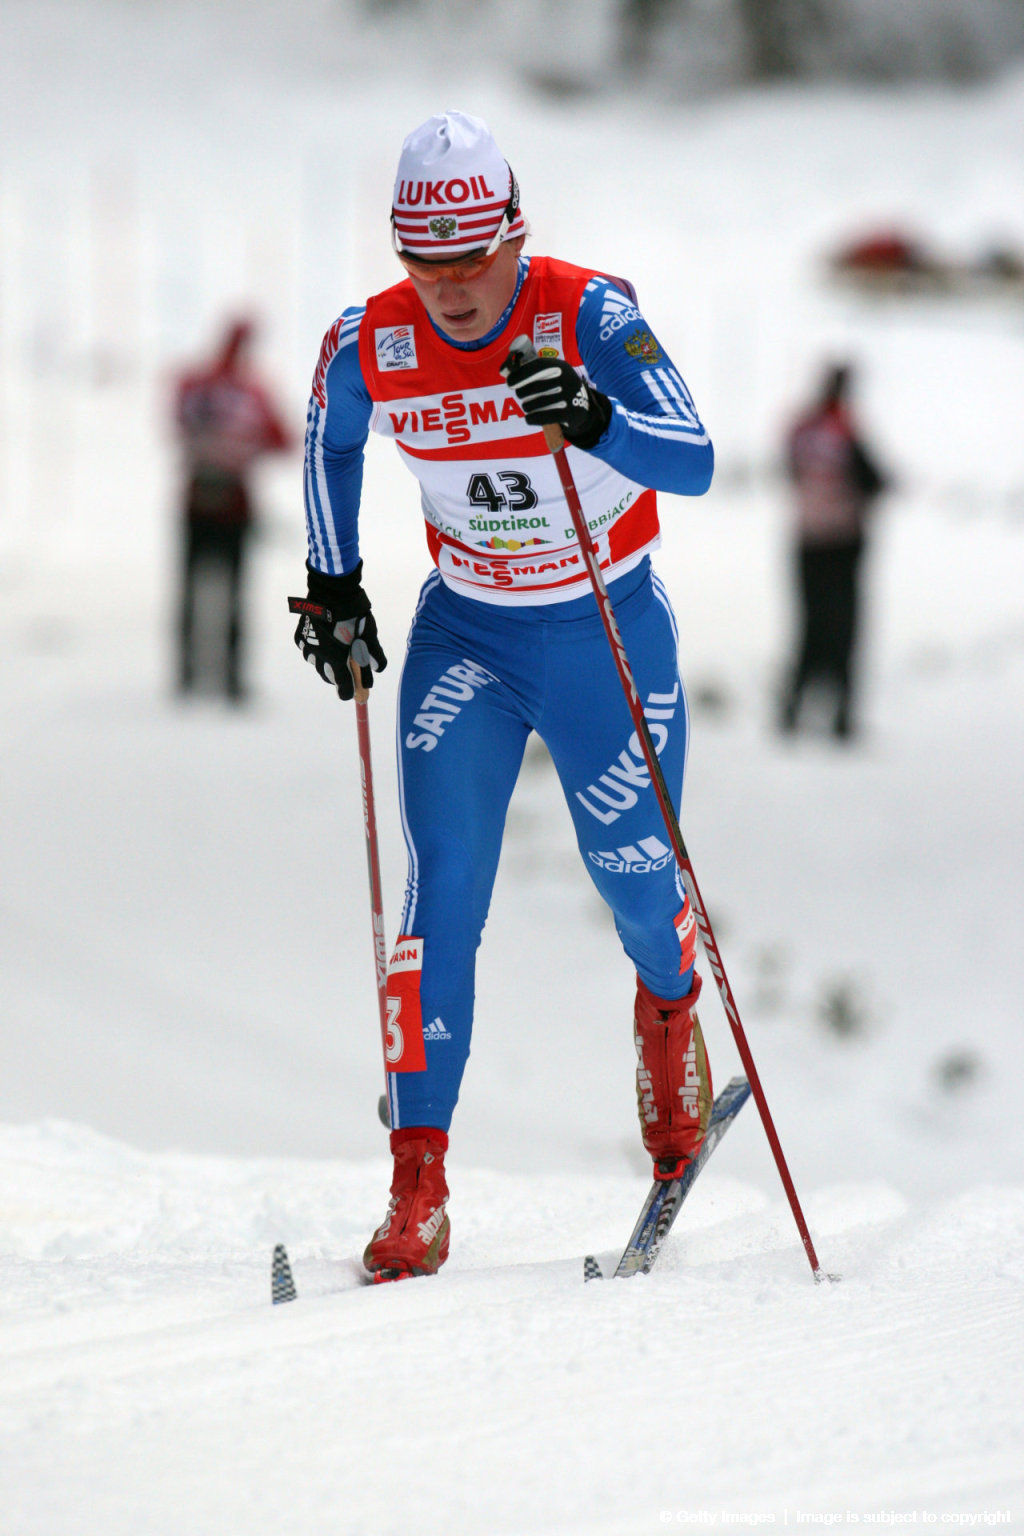 FIS Tour de Ski — Women's Stage 6